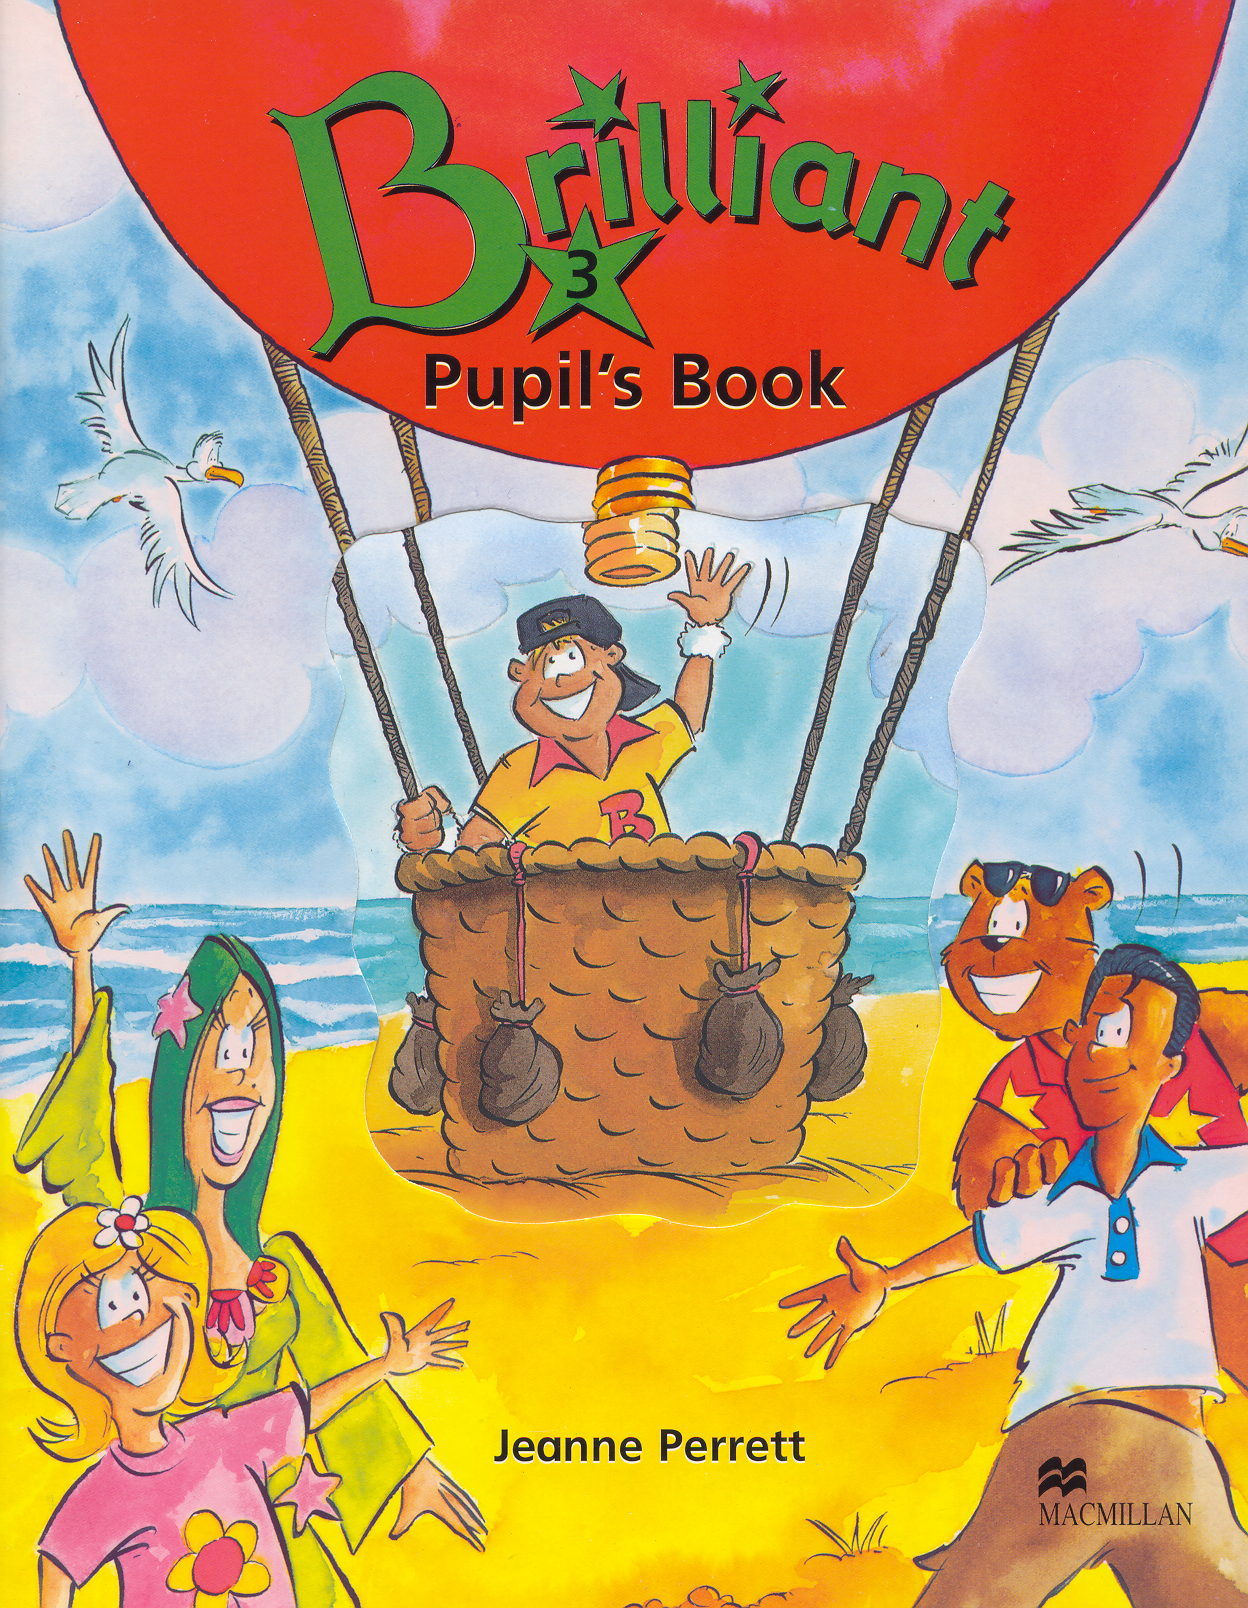 Pupils book 4 1. Jeanne Perrett s pupil's book. Brilliant 3 pupil's book. Brilliant 2 pupil's book. Brilliant английский книги.